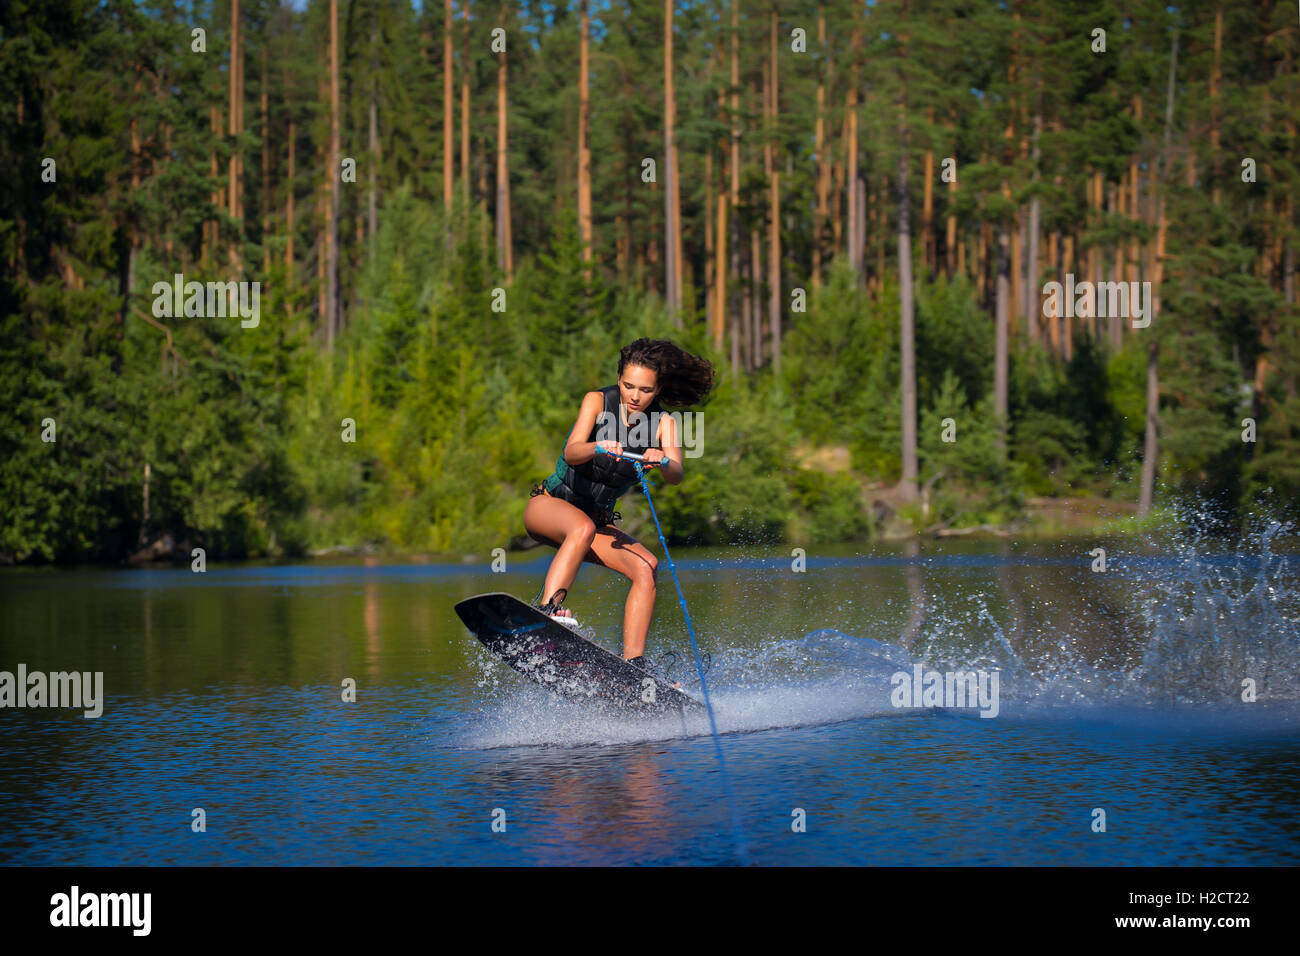 Junge hübsche Frau Studie Wakeboard fahren, an einem See Stockfoto